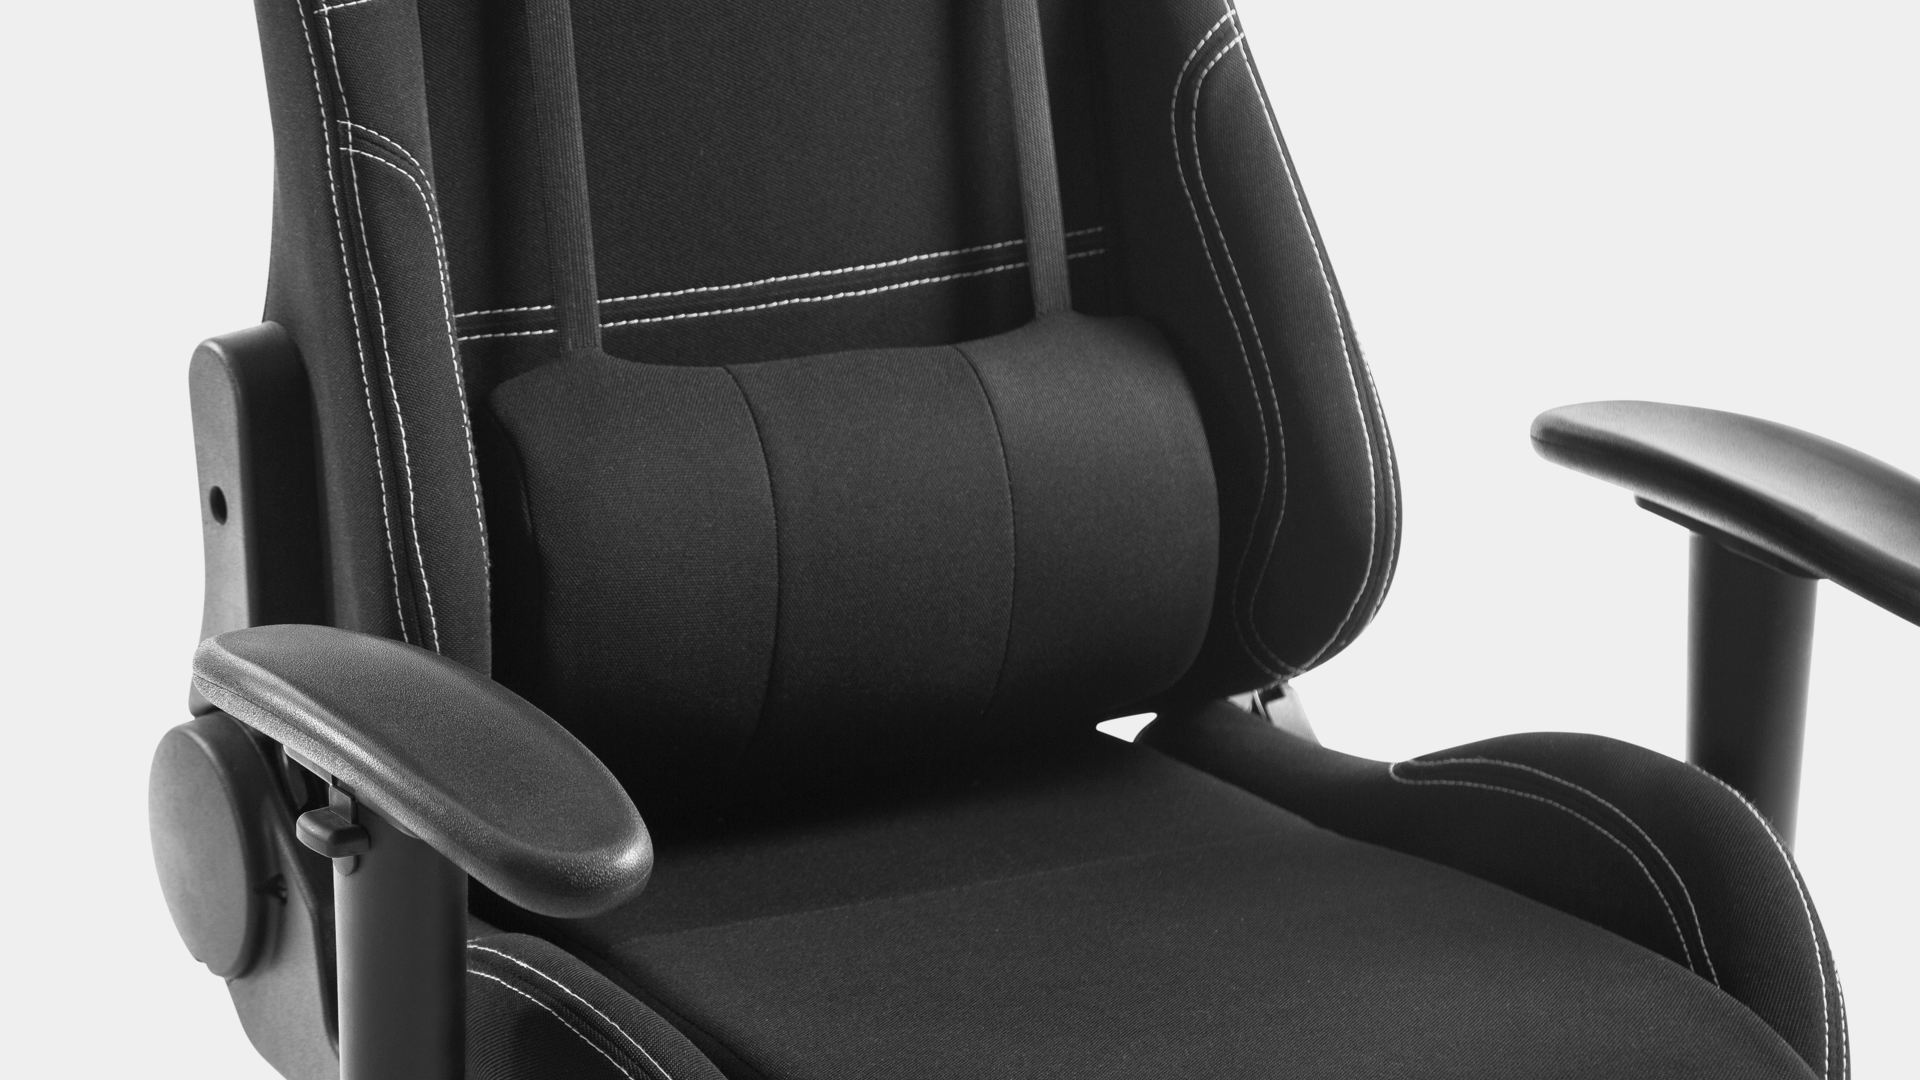 detalhe de cadeira de escritório com suporte lombar ajustável, slikdesk tronis preta em um fundo branco